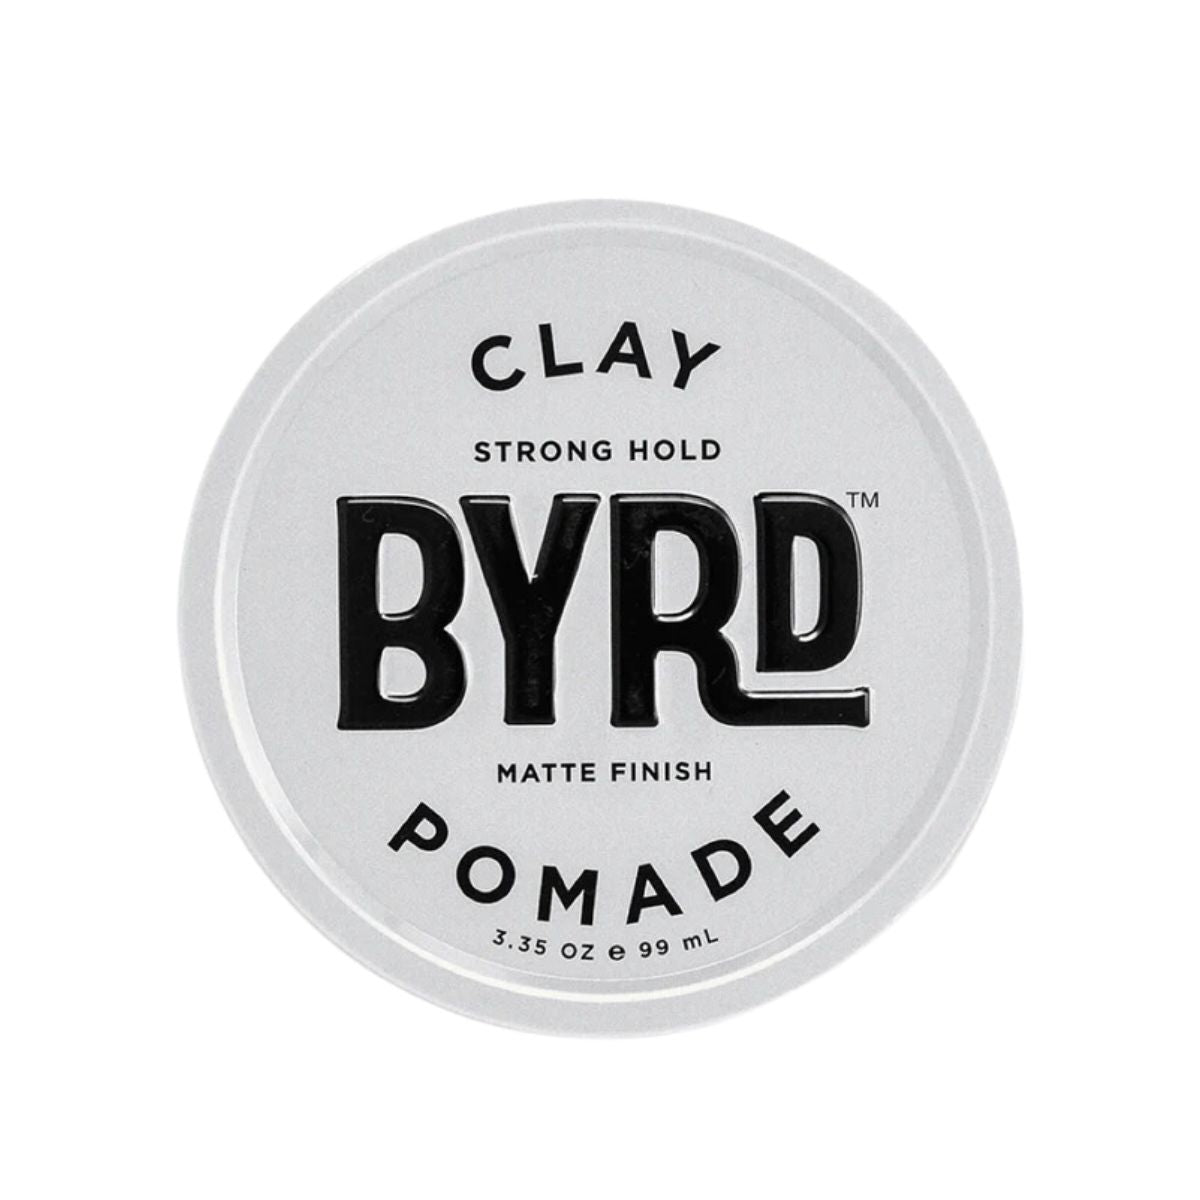 Pomada Clay, Byrd, 3.35oz